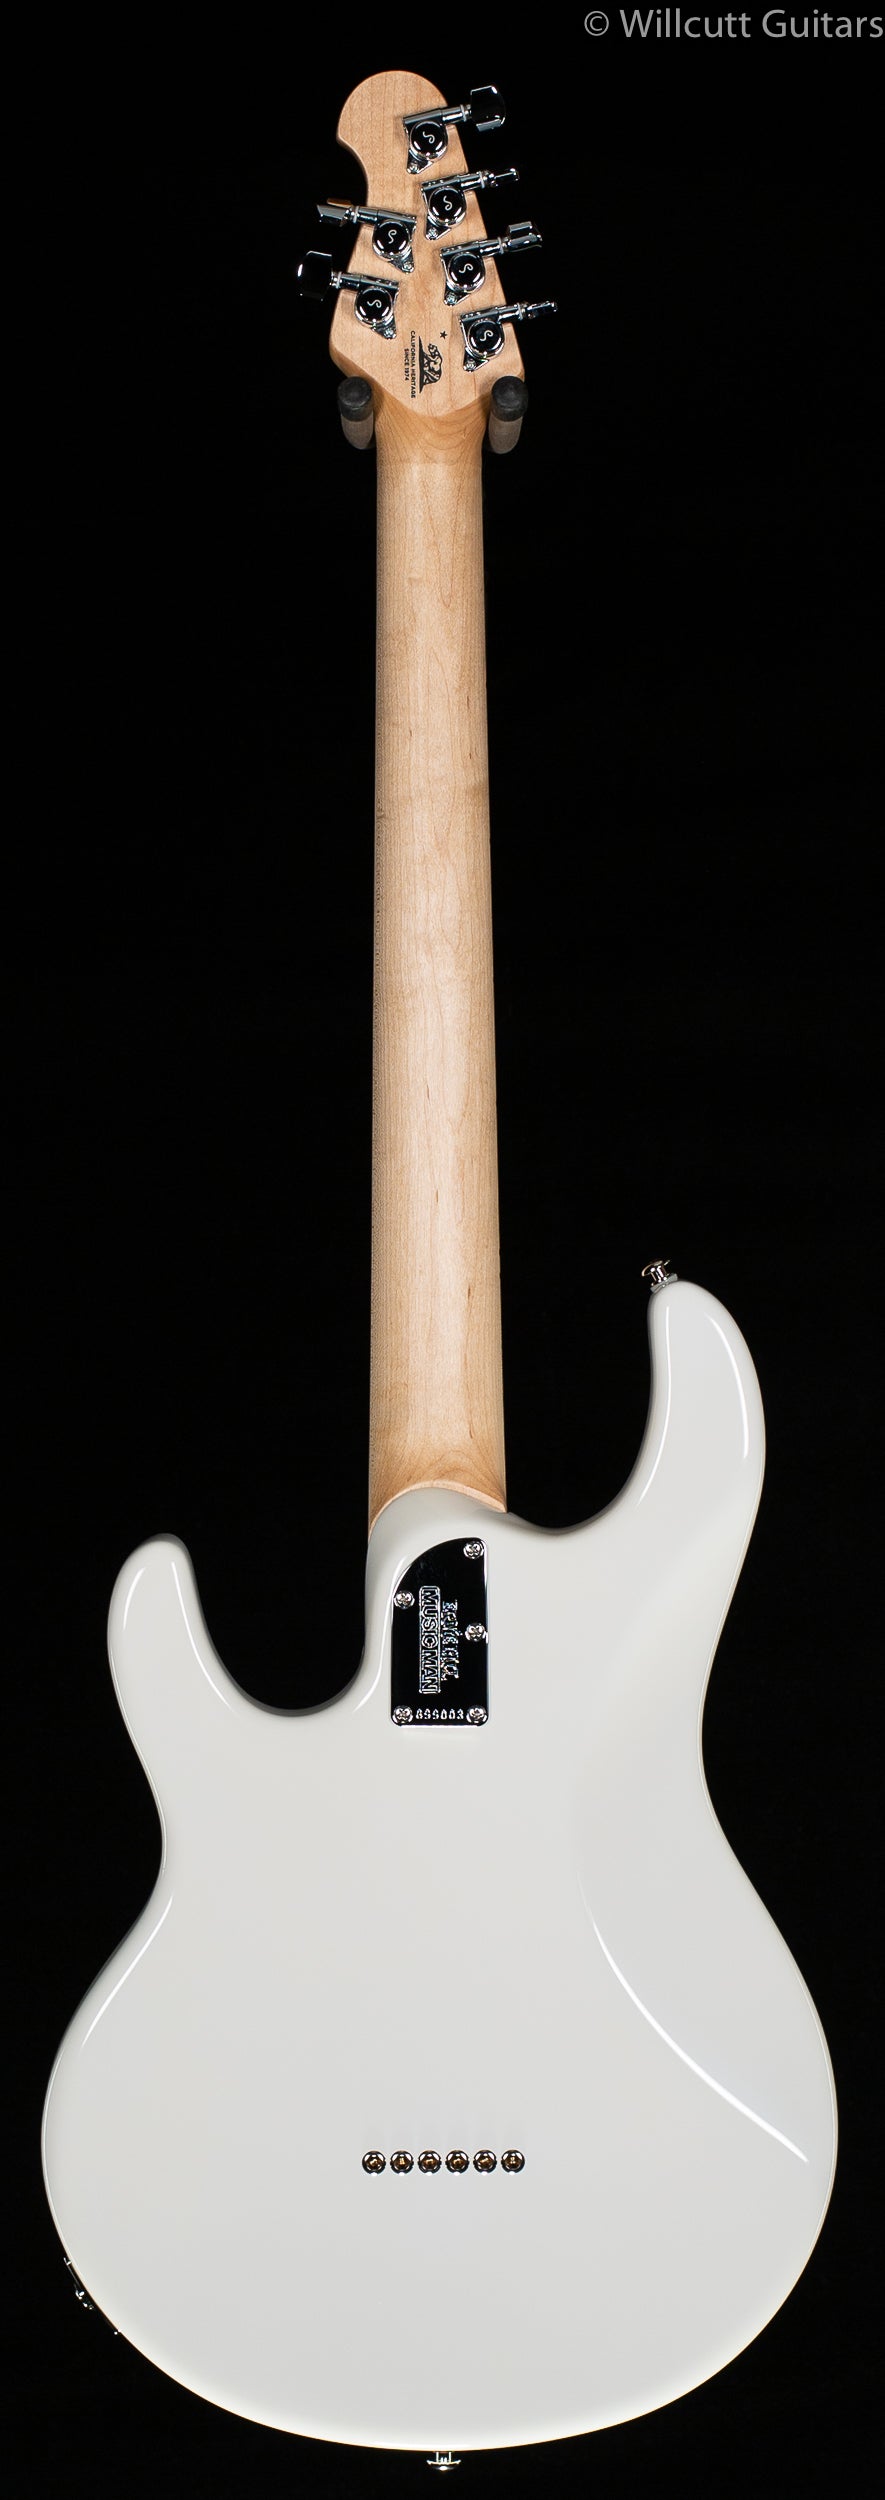 Ernie Ball Music Man Silhouette HSH Hardtail White - Willcutt Guitars